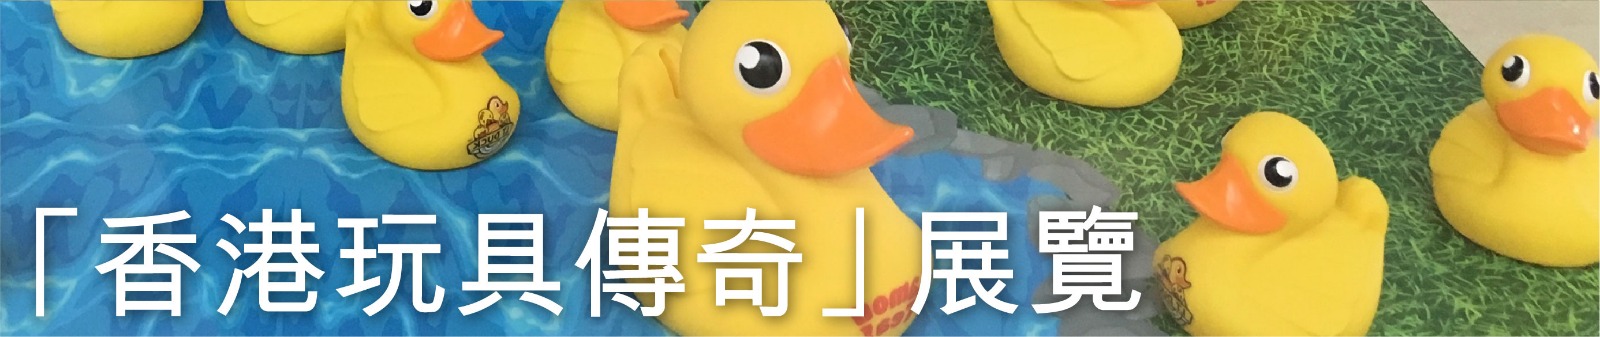 「香港玩具傳奇」展覽